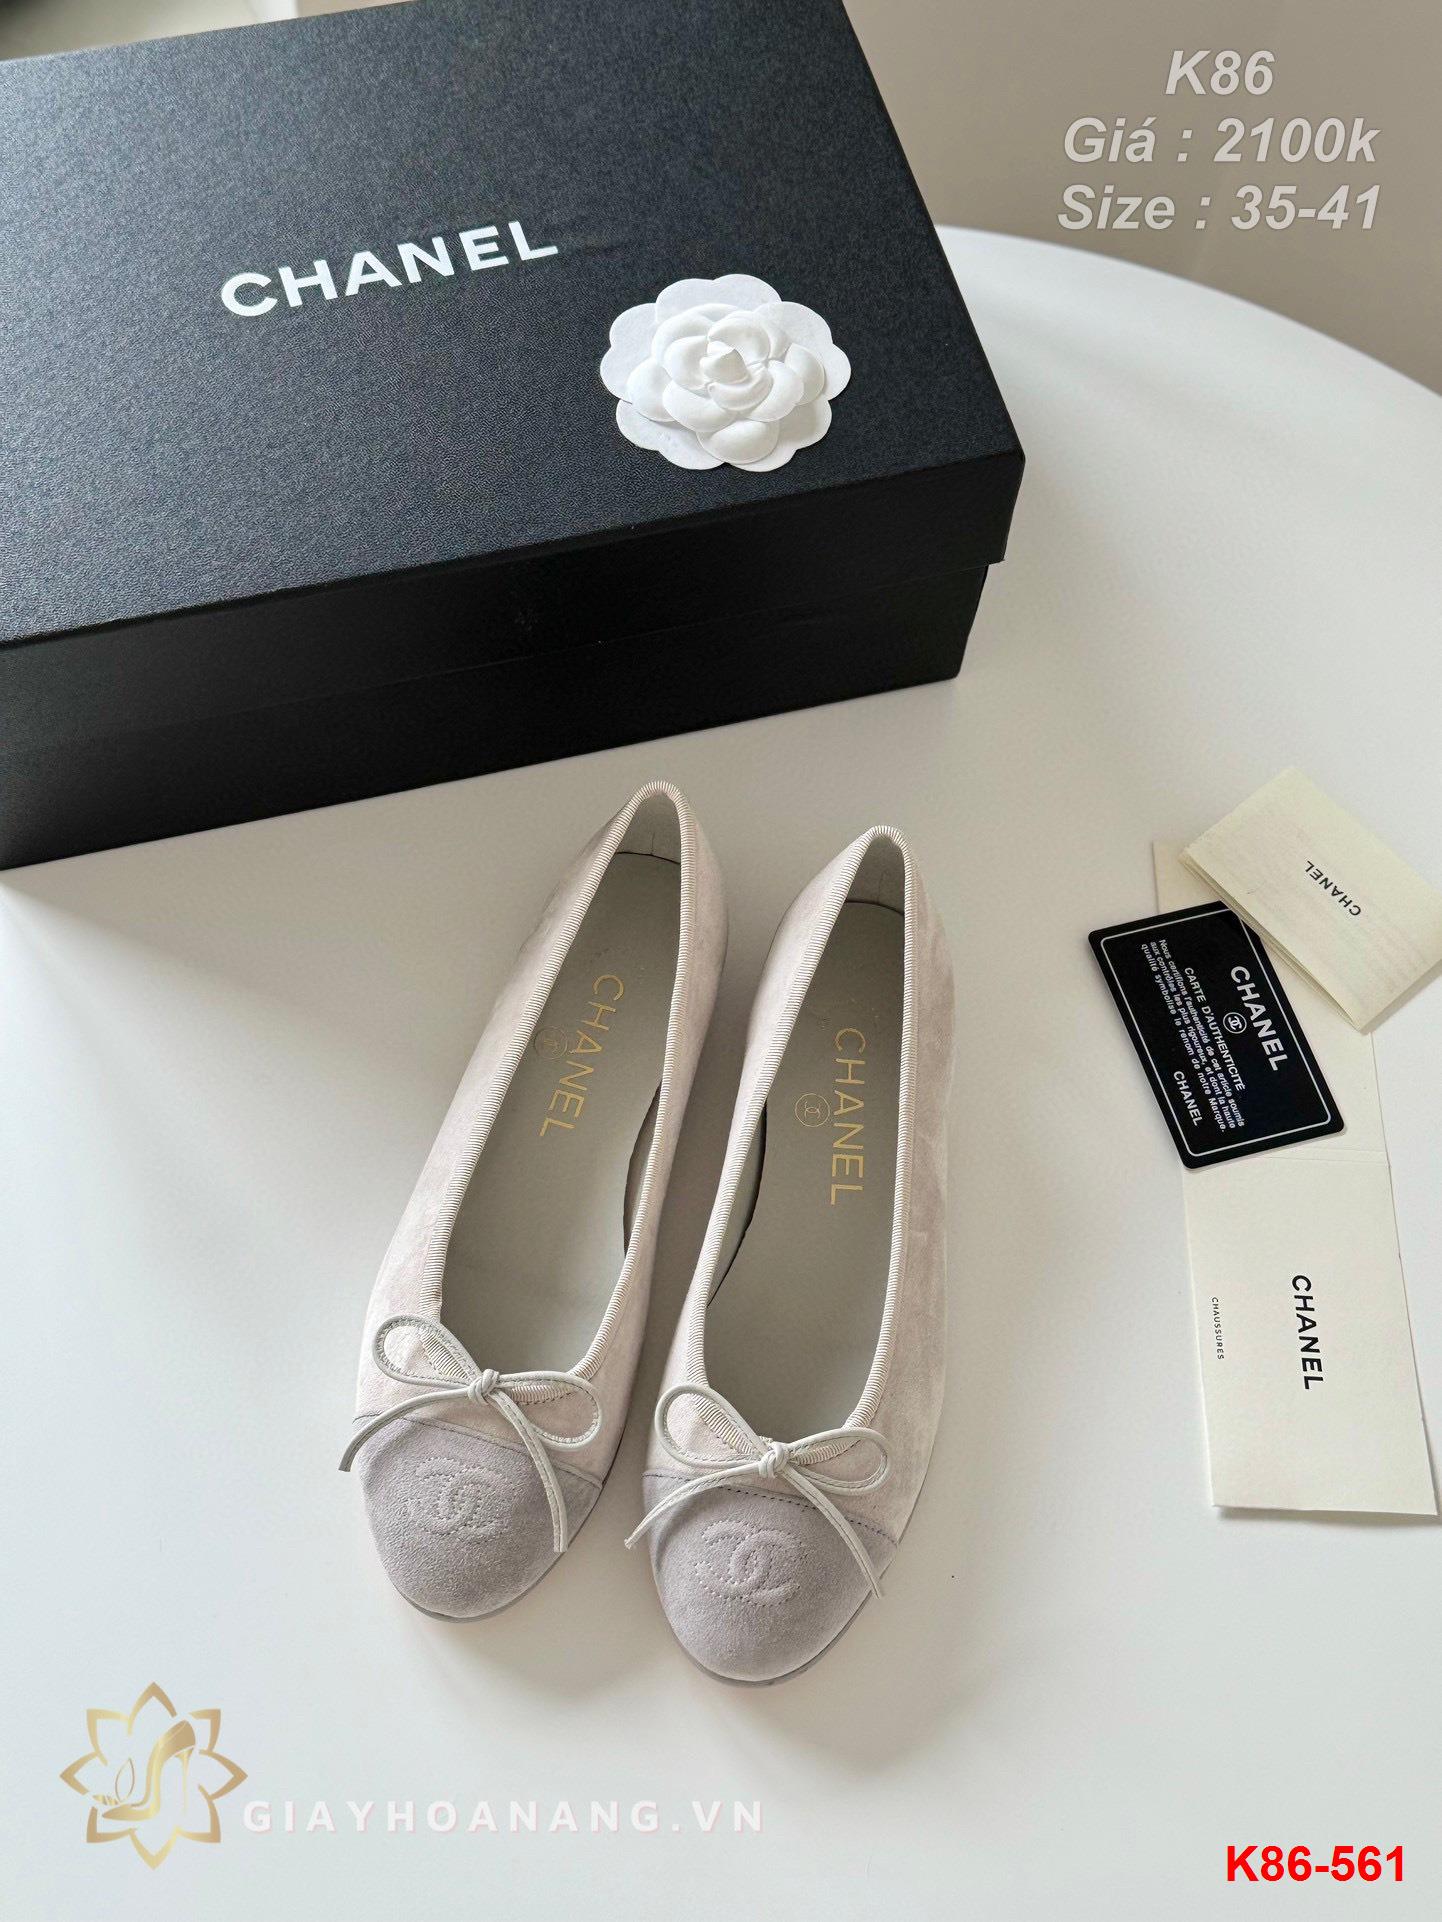 K86-561 Chanel giày bệt siêu cấp